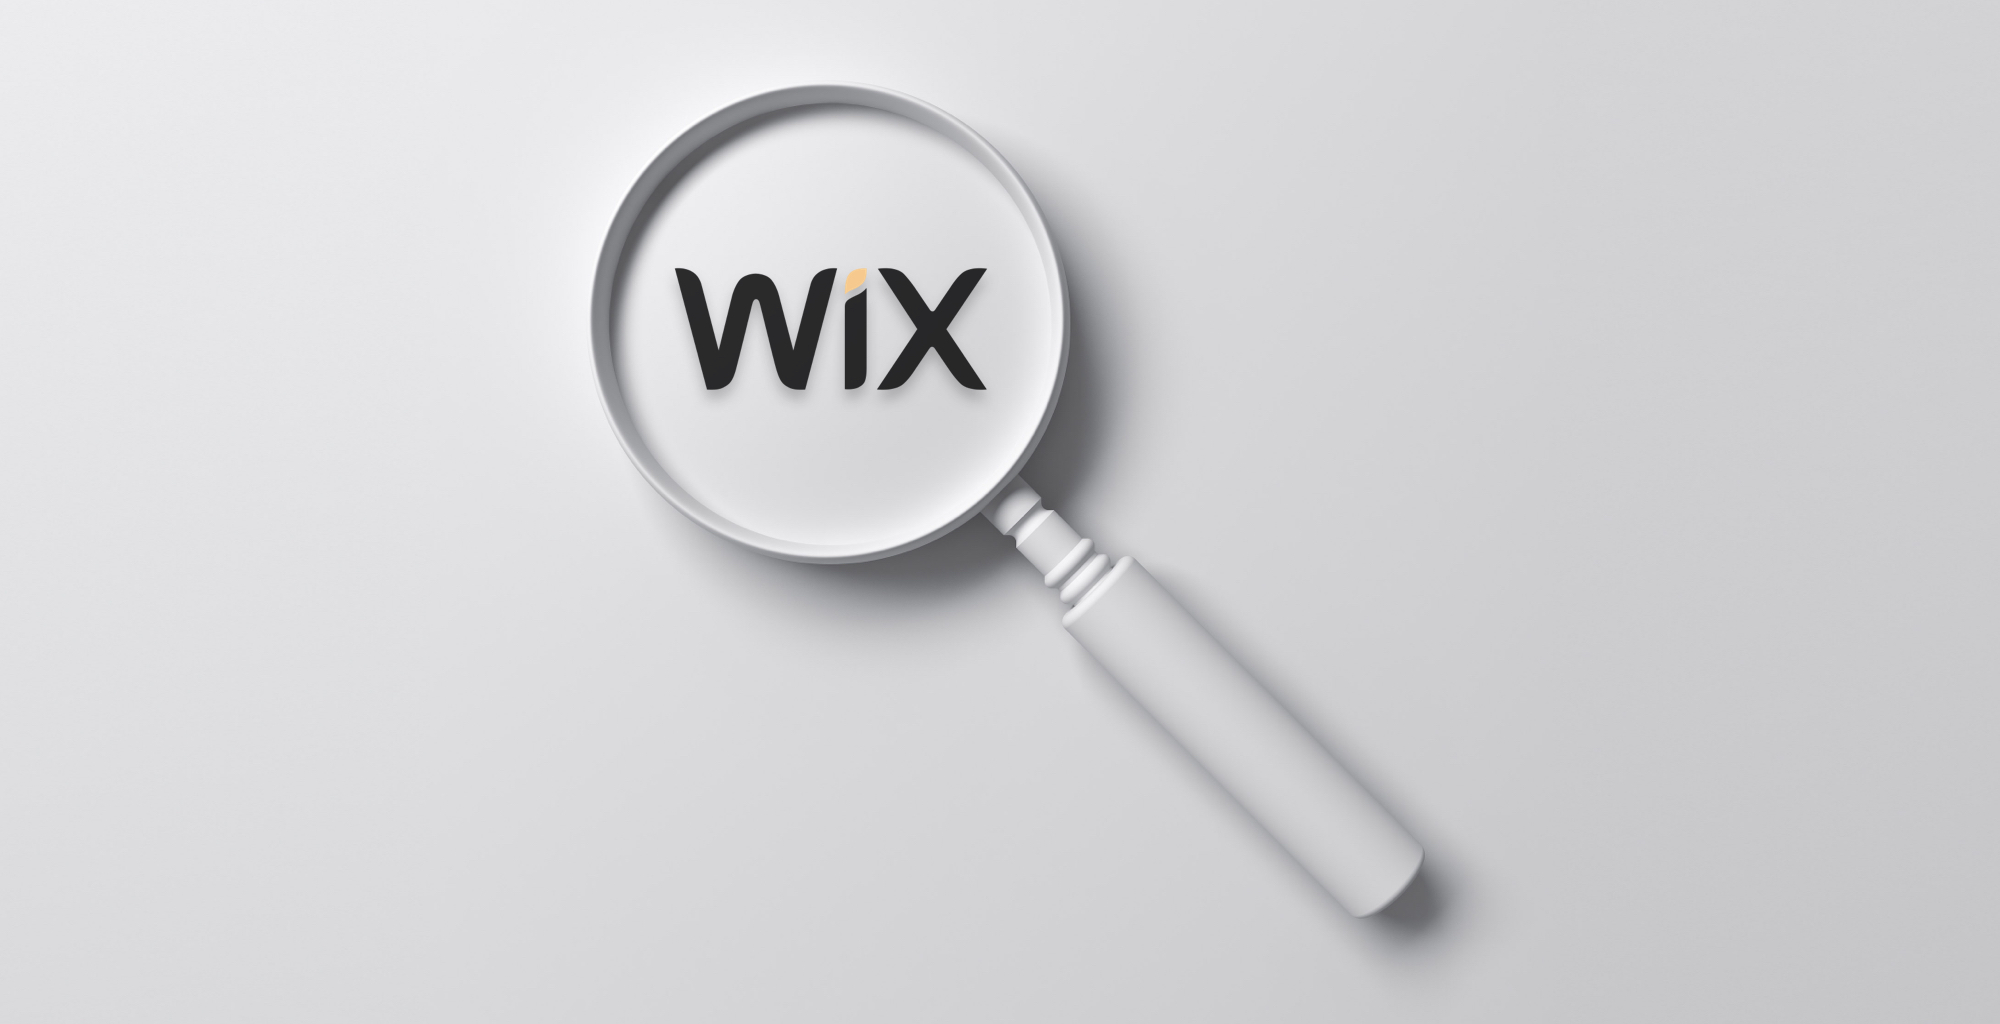 ventajas y desventajas de wix